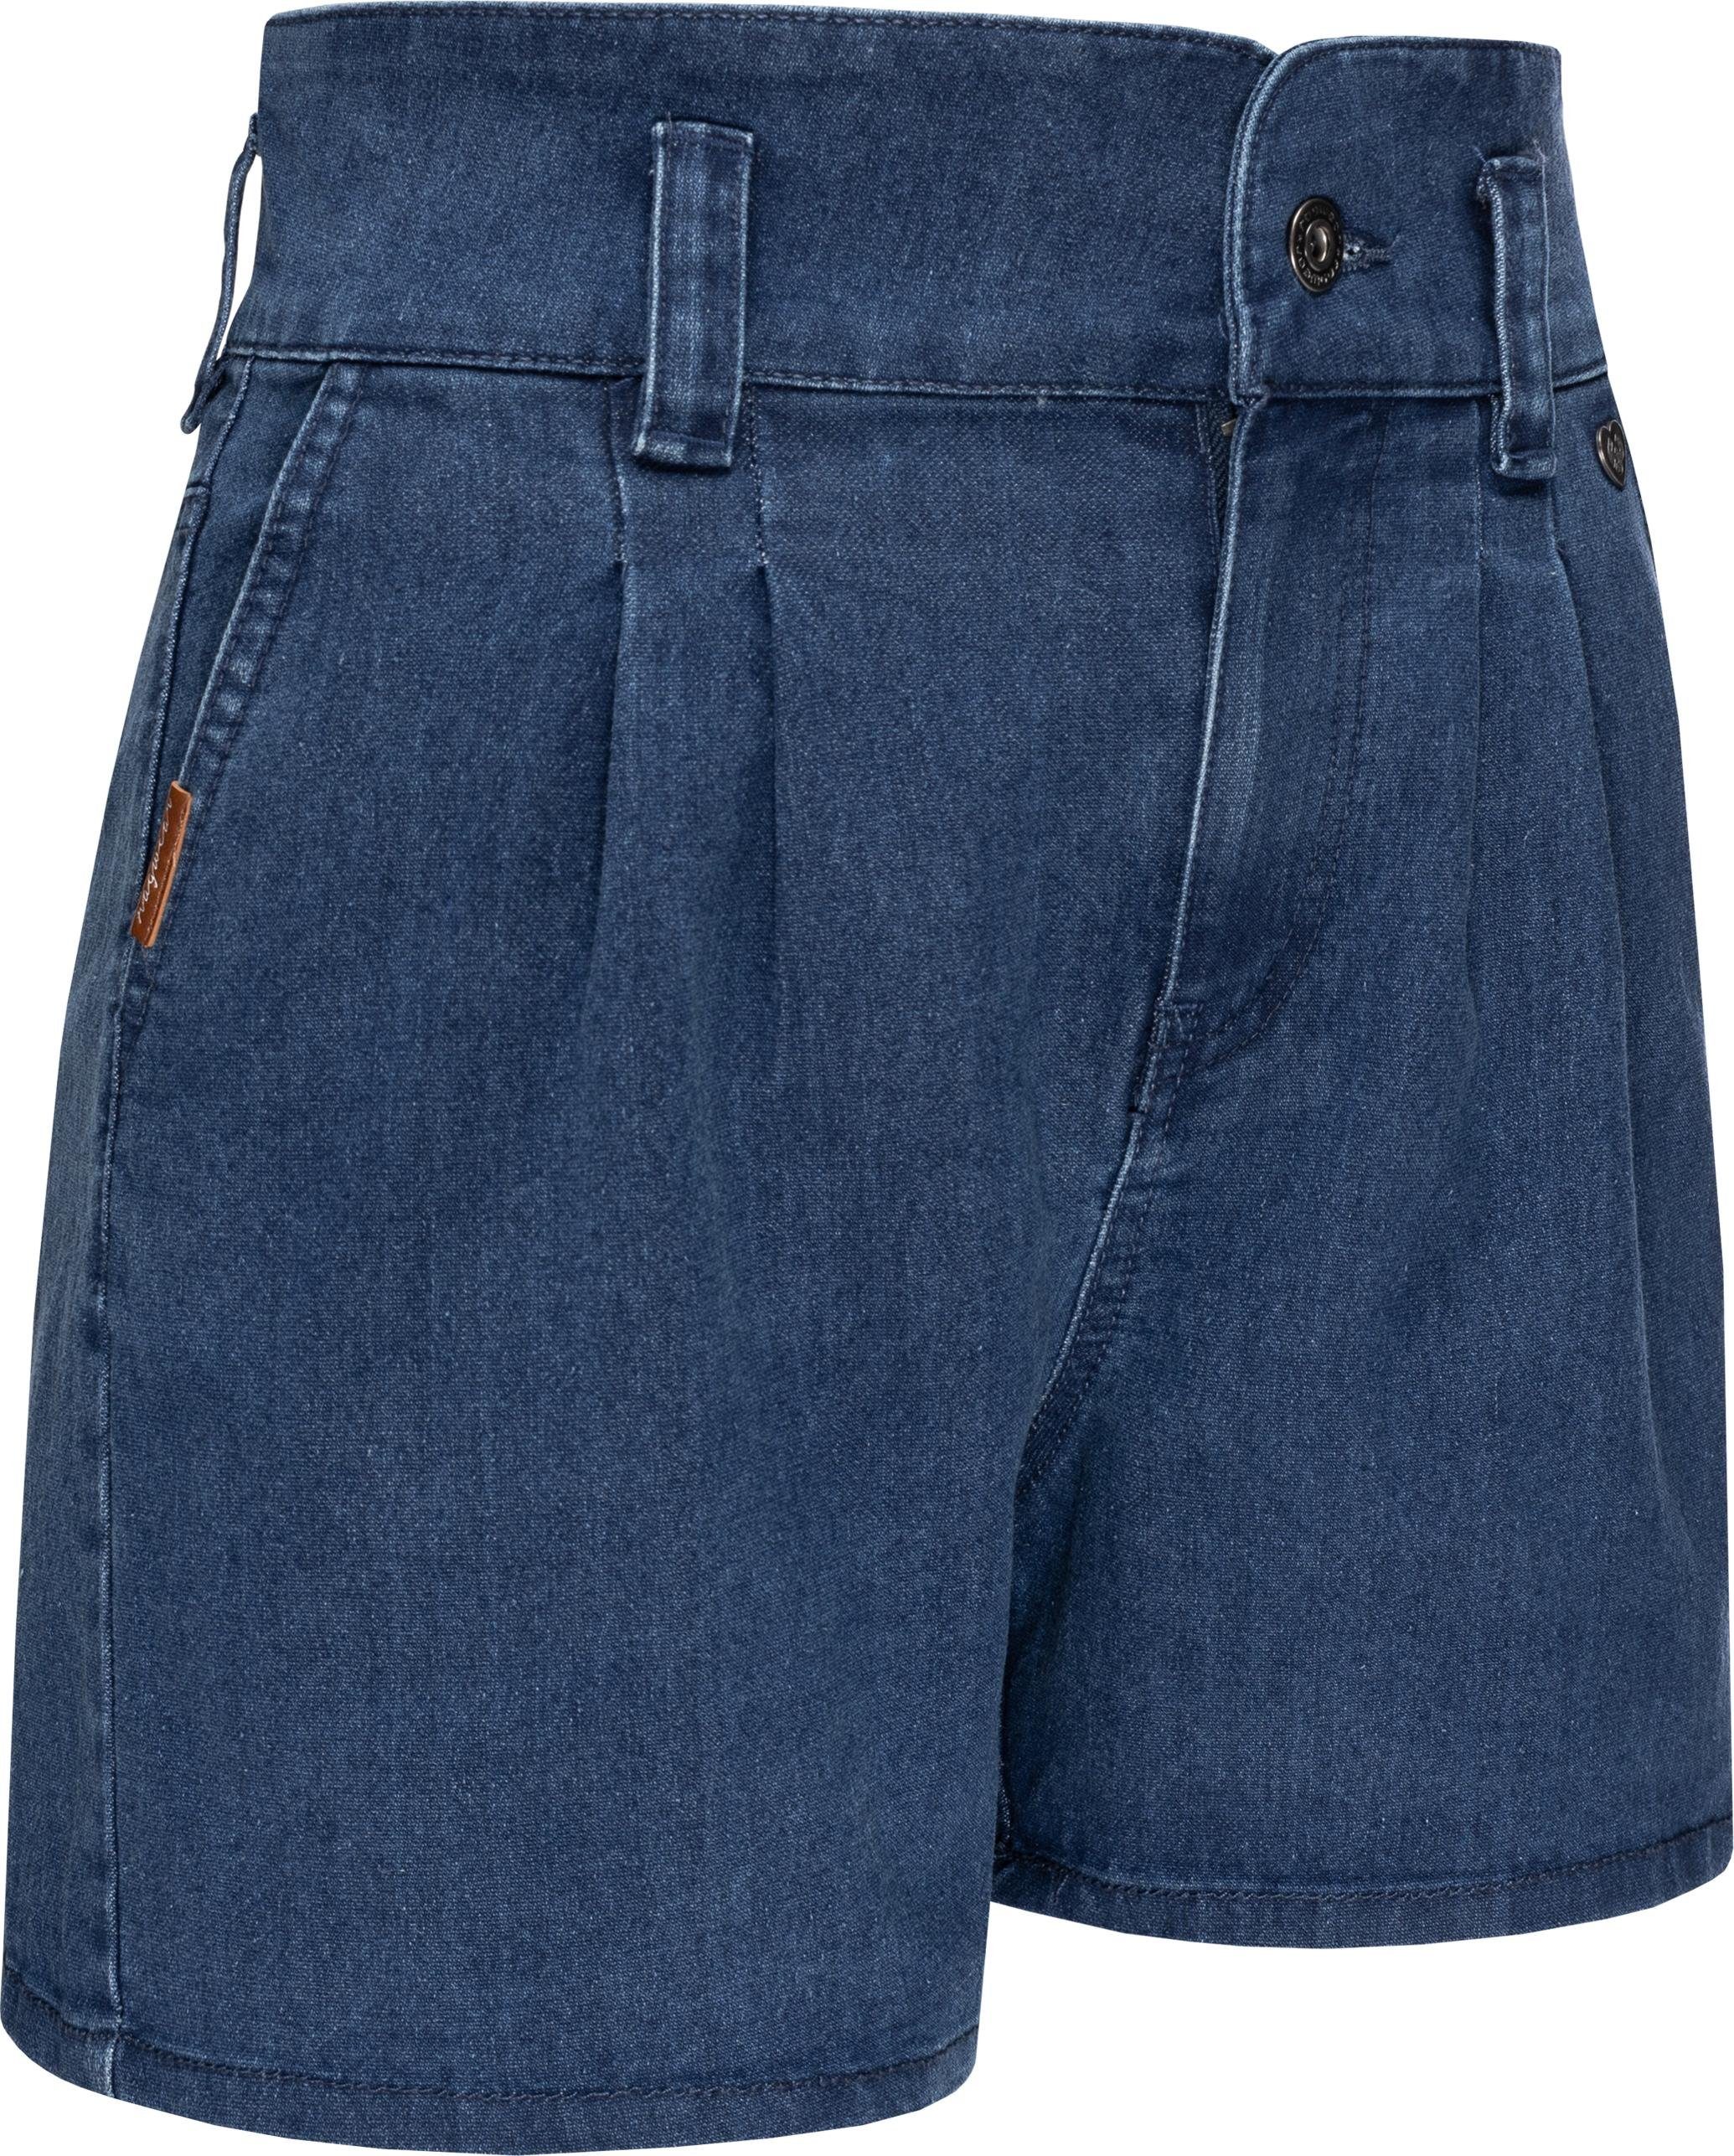 Ragwear Shorts Suzzie stylische, kurze Sommerhose in Jeansoptik